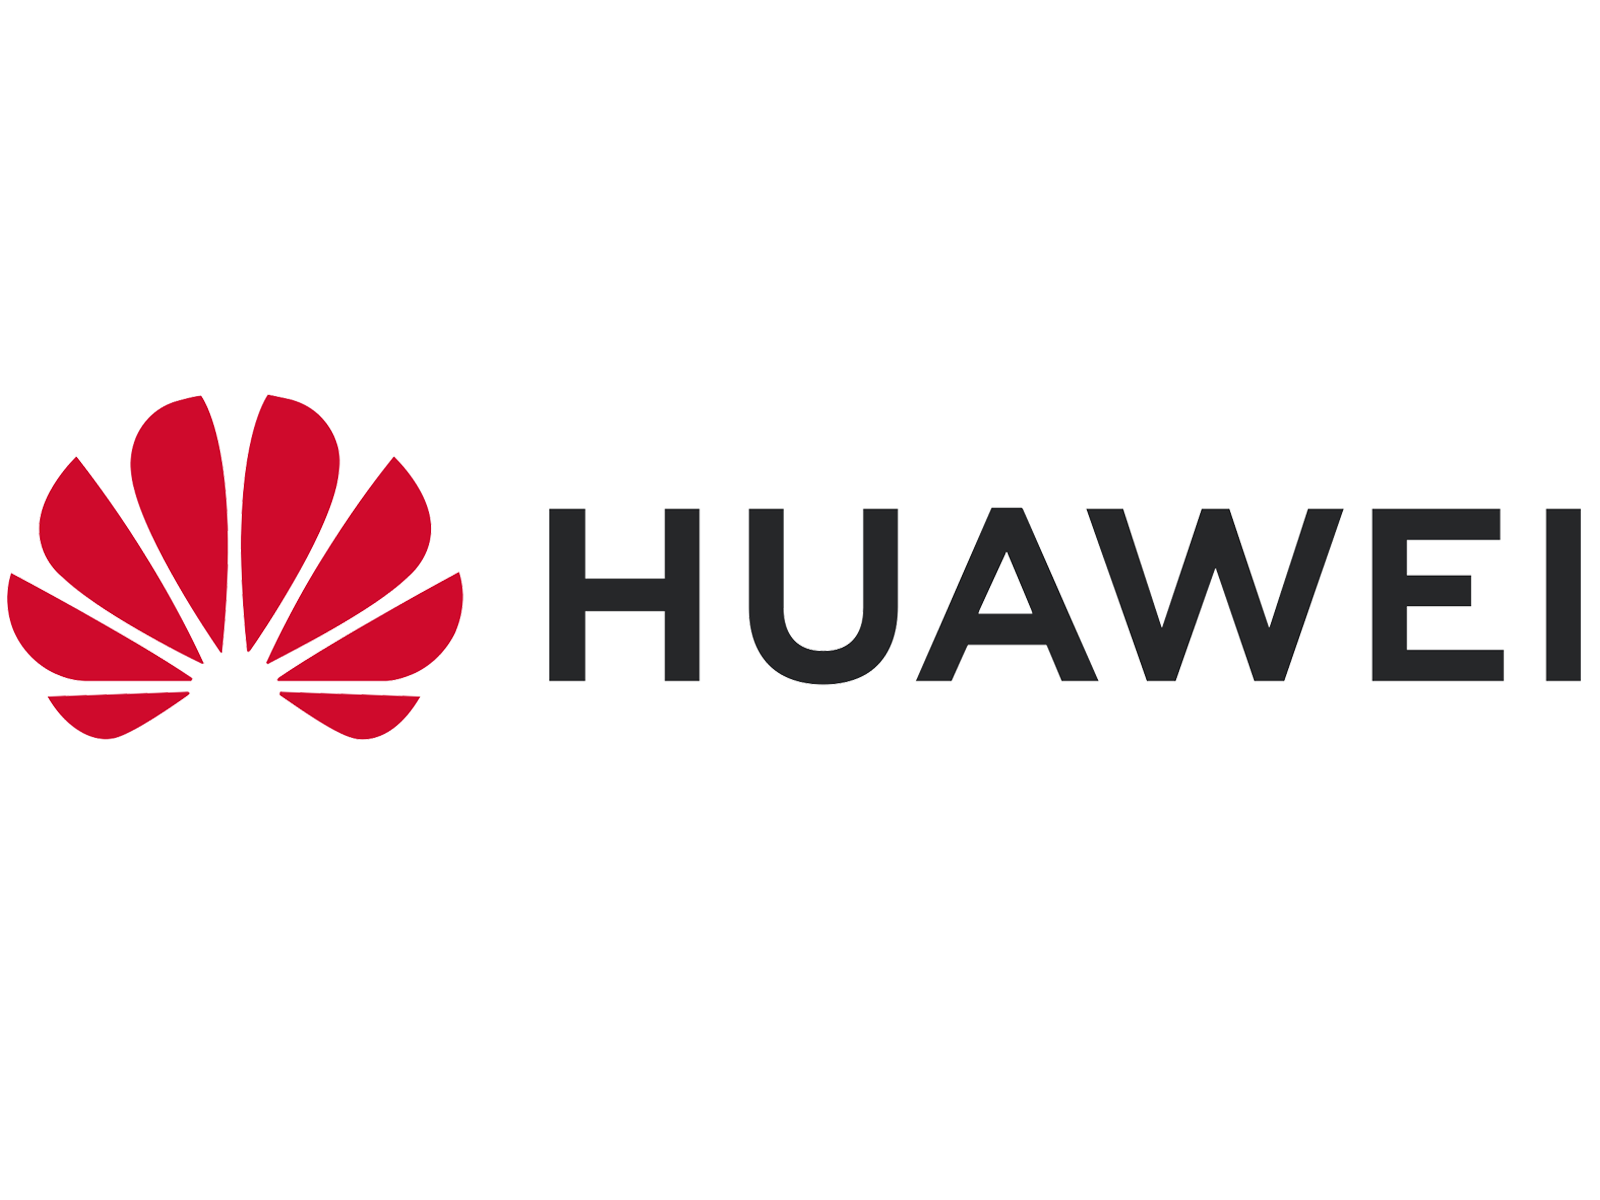 Huawei Phones